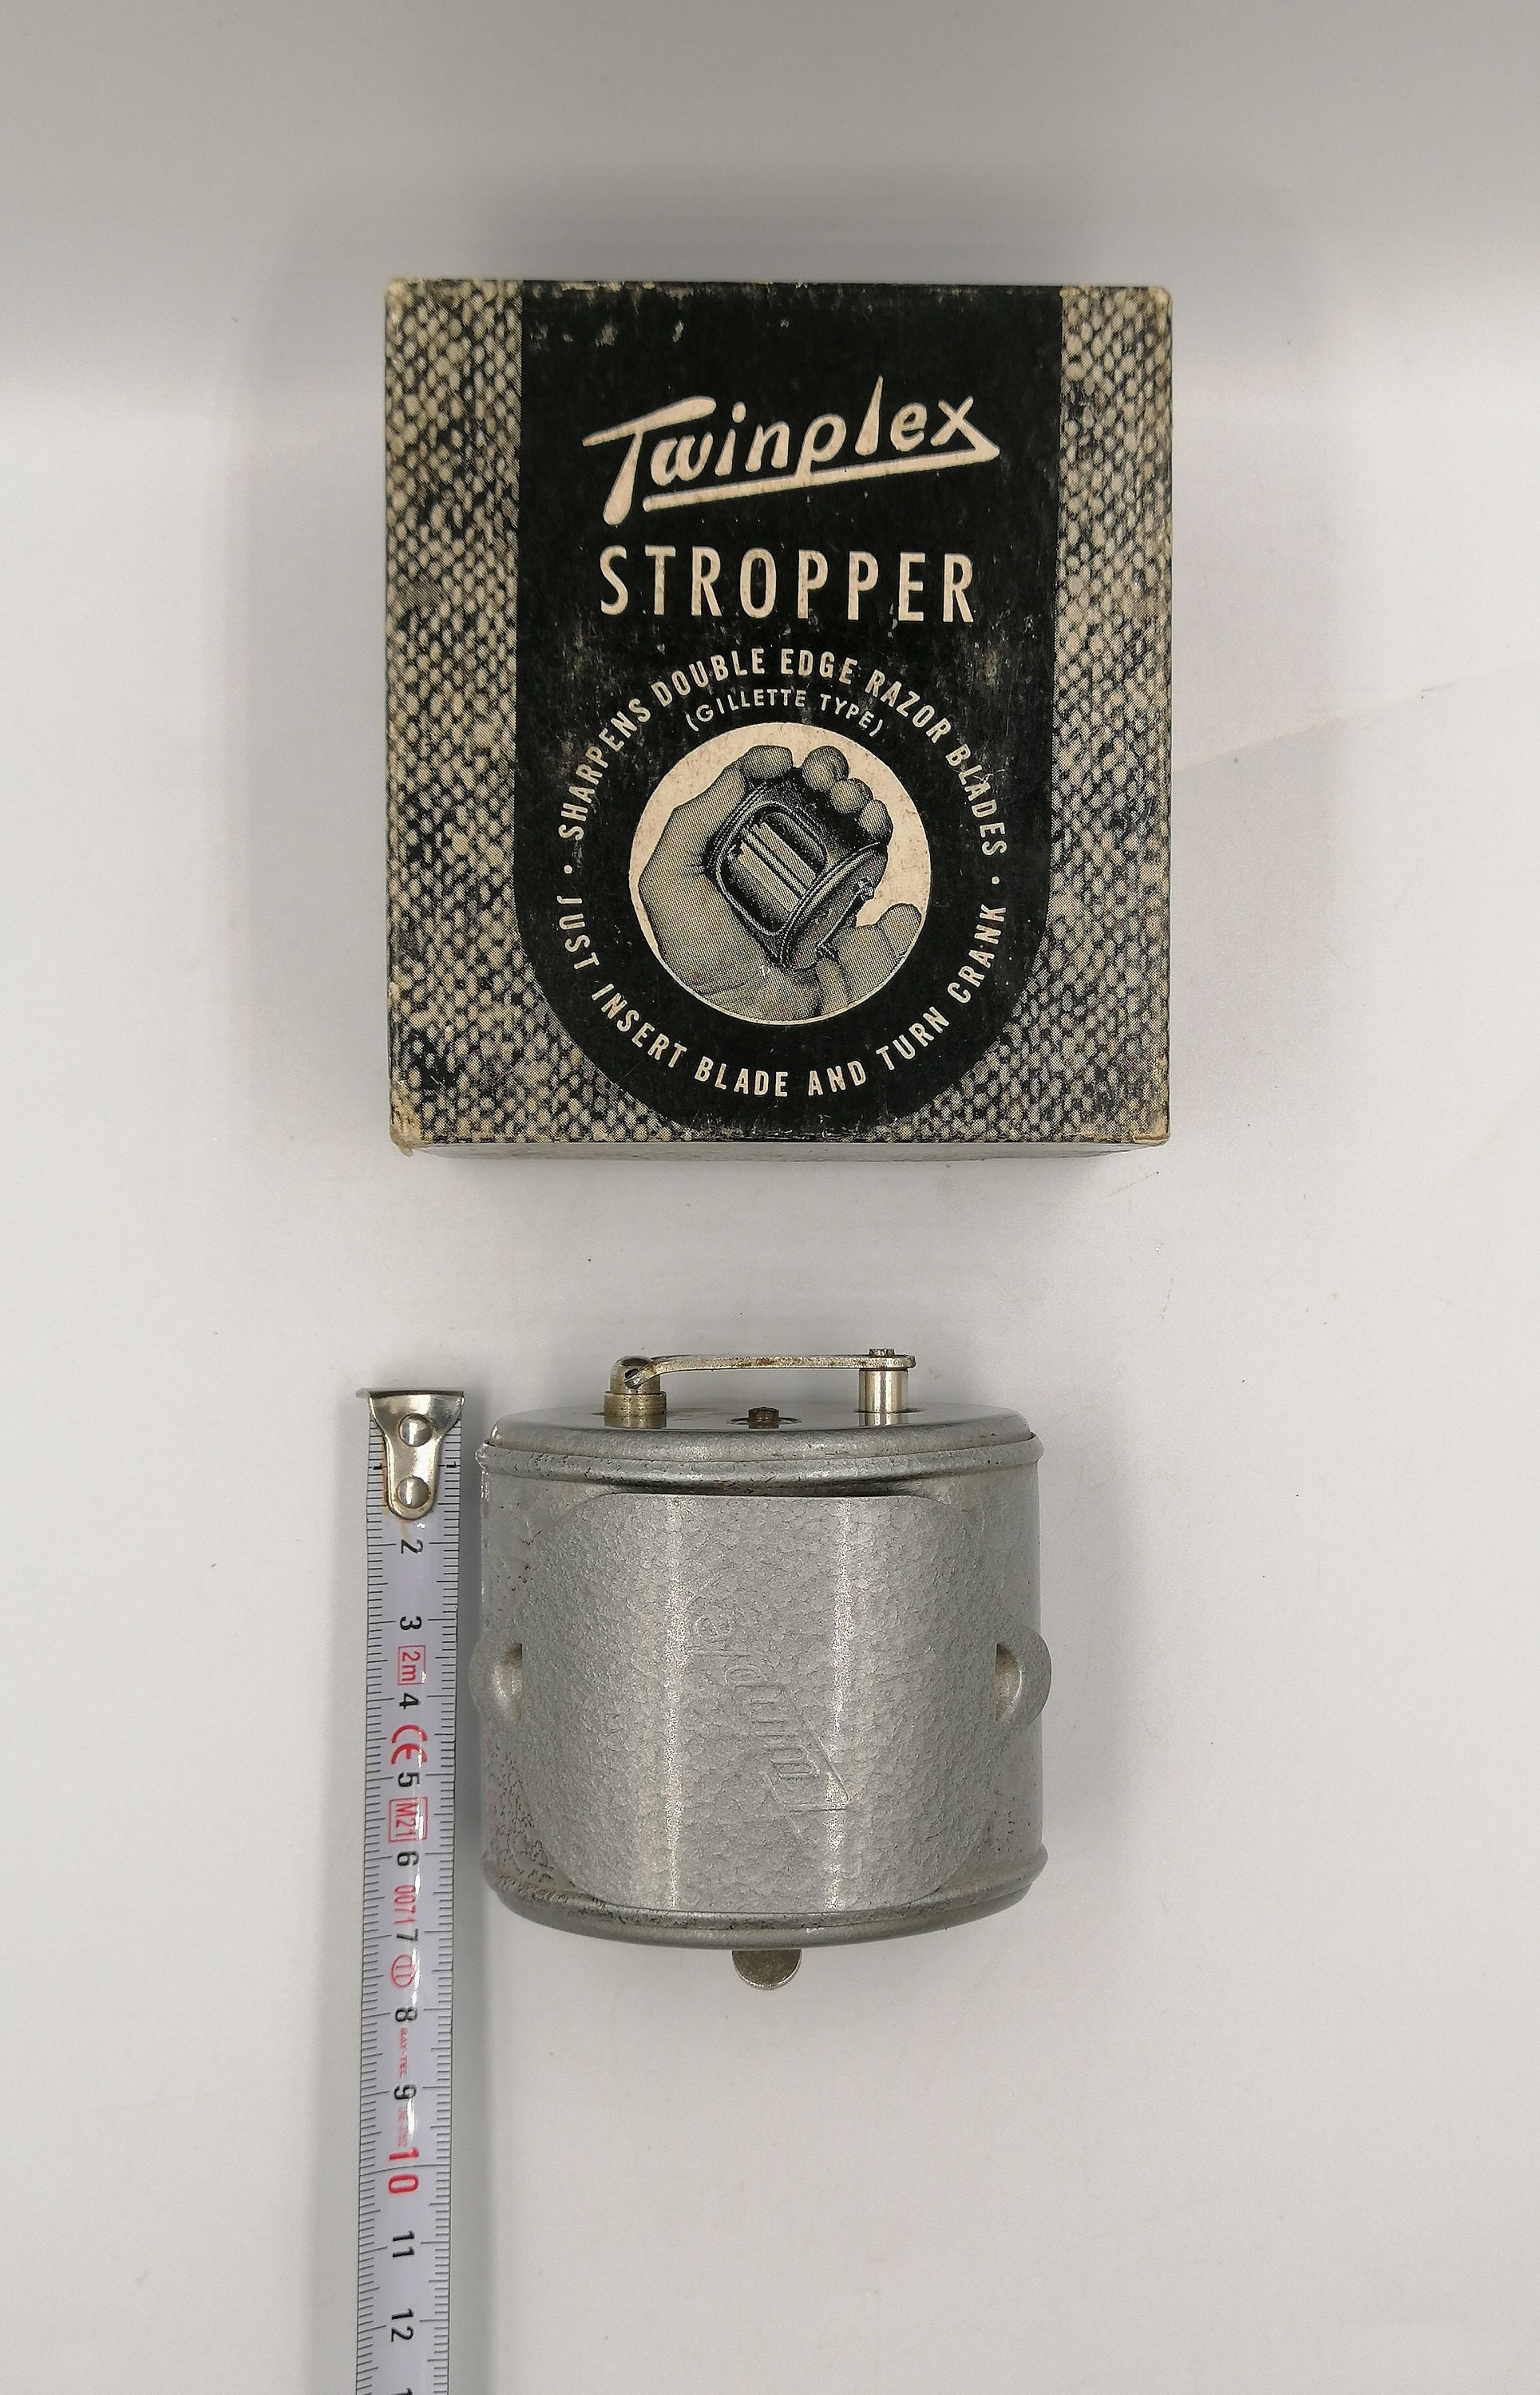 Lot - TWINPLEX STROPPER DOUBLE EDGE RAZOR BLADE SHARPENER IN BOX